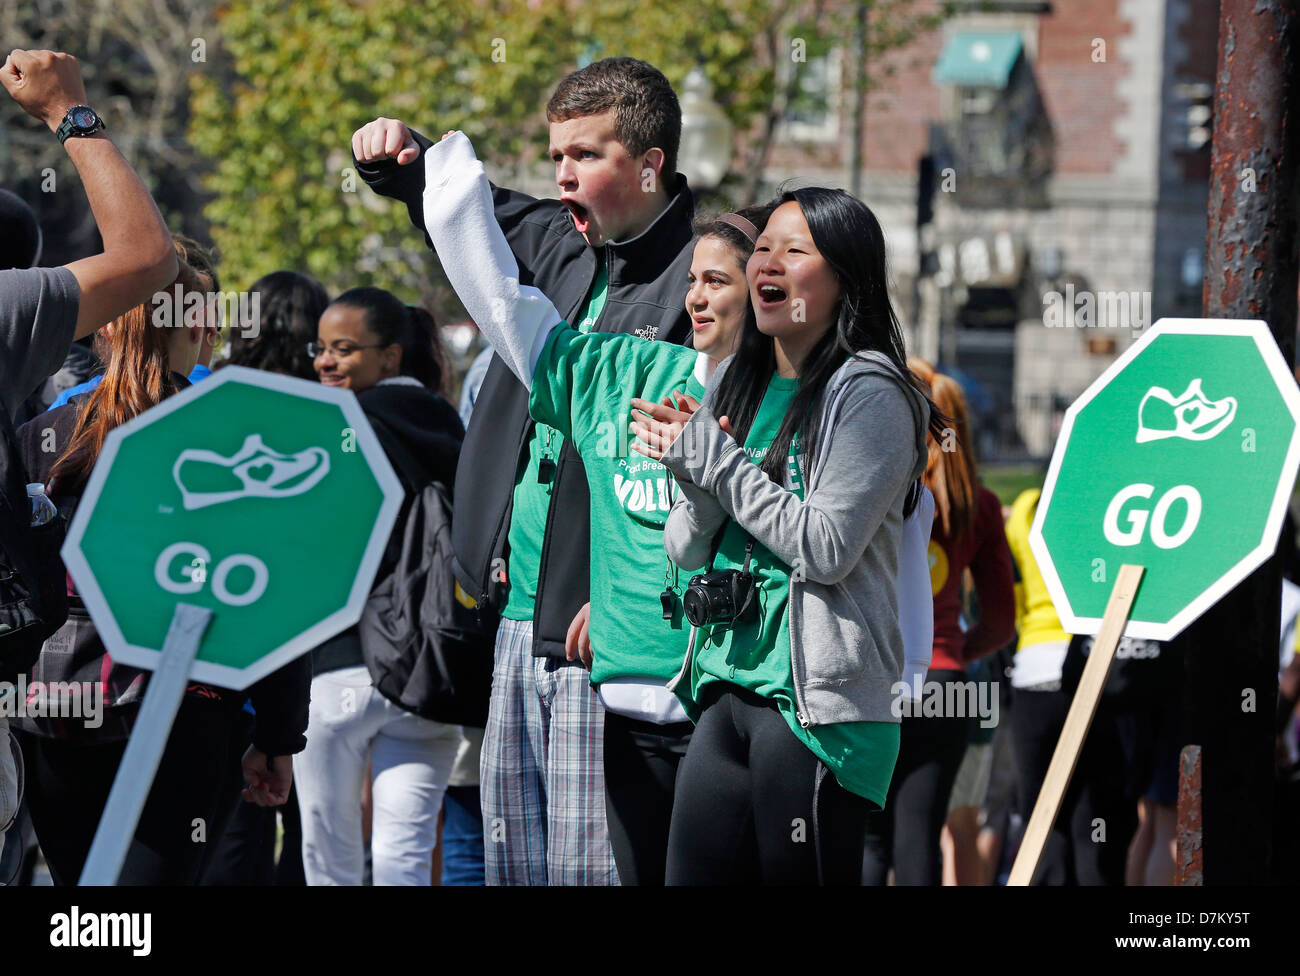 Los voluntarios alentar caminantes en el paseo por el hambre evento de caridad, Boston, Massachusetts Foto de stock